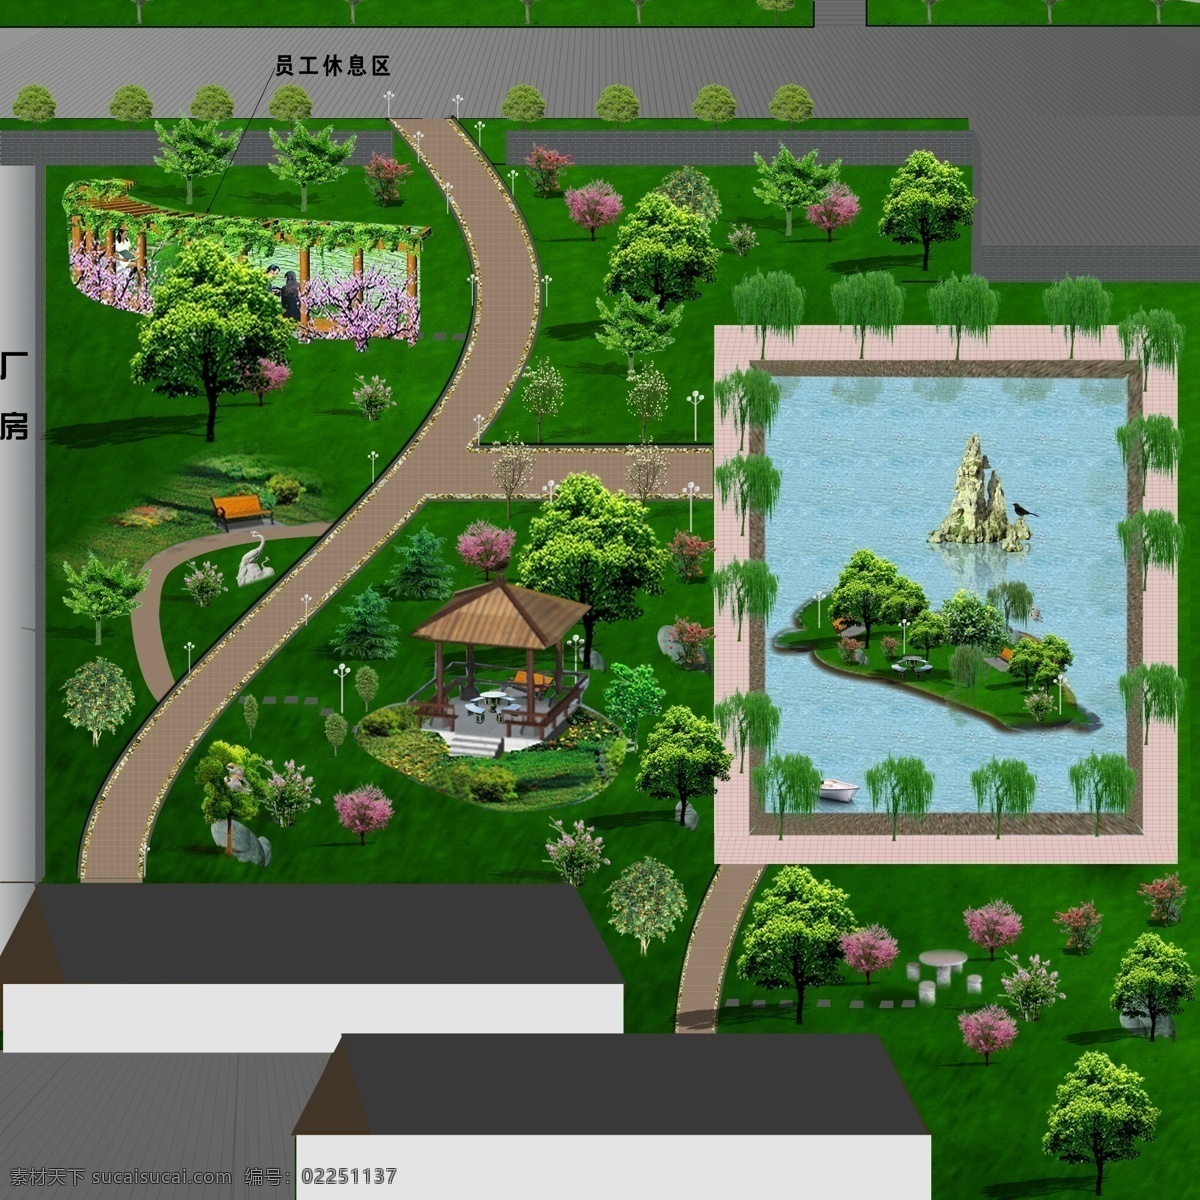 花园 绿化 效果图 绿化效果图 绿化树木 草坪 花 池塘 其他设计 环境设计 源文件